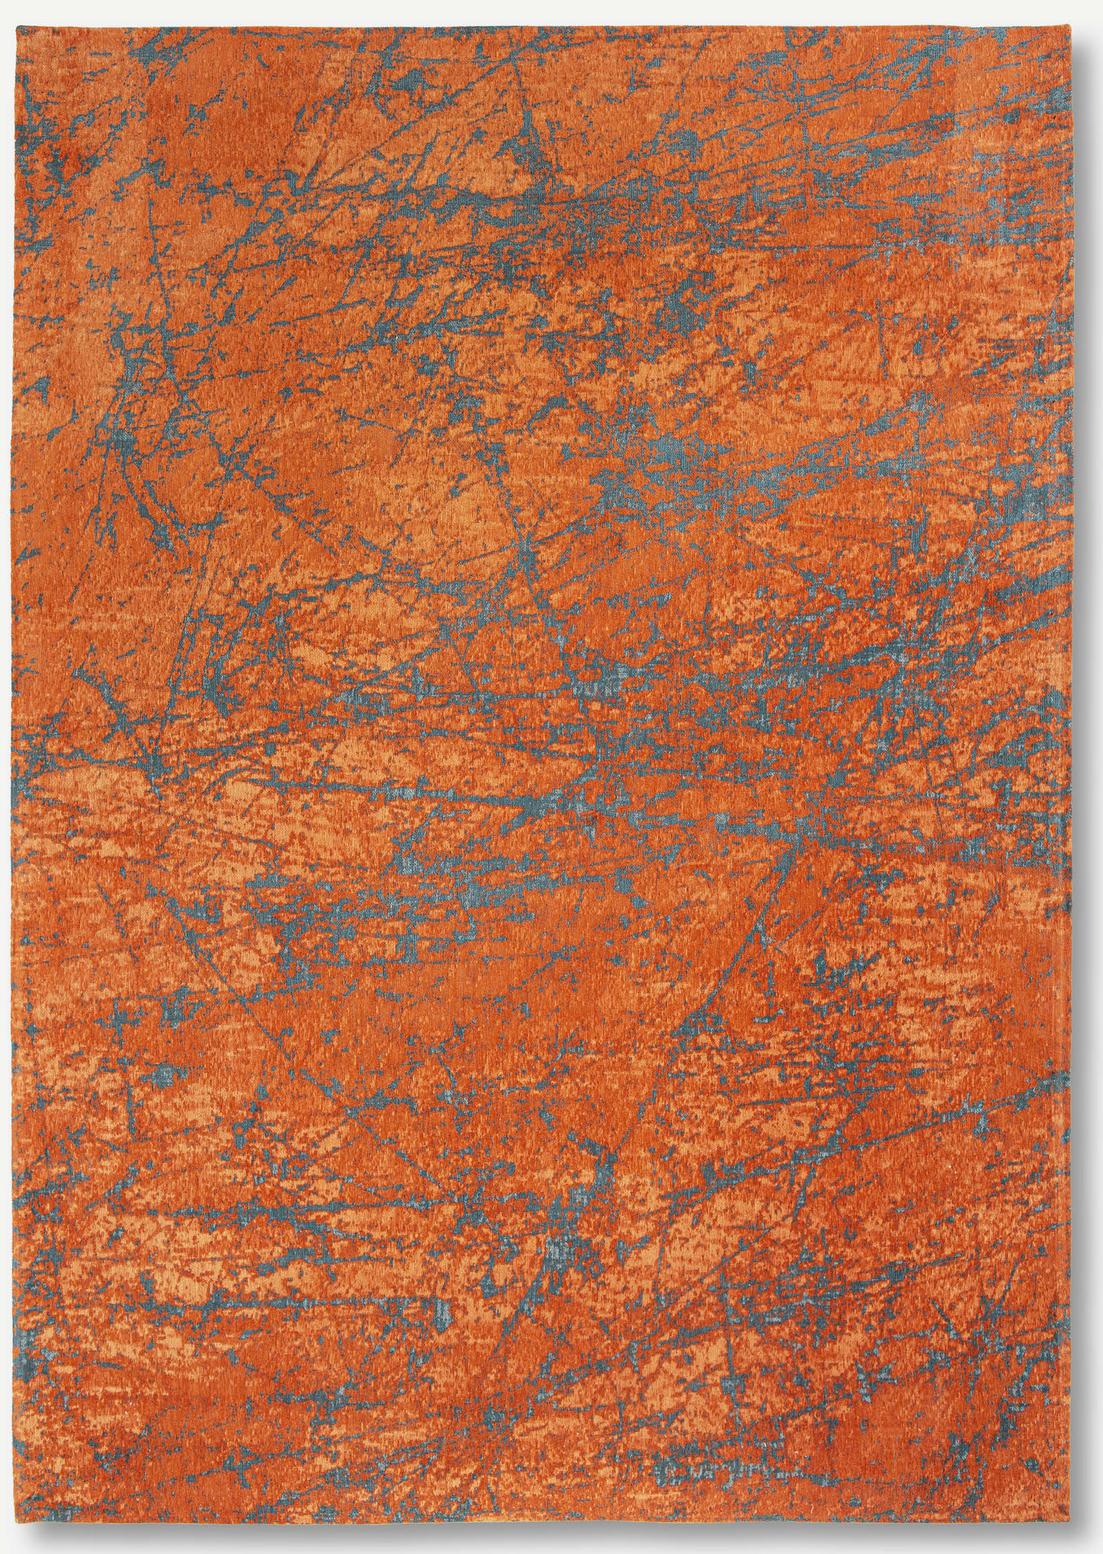 Art Orange Belgian Rug ☞ Size: 6' 7" x 9' 2" (200 x 280 cm)